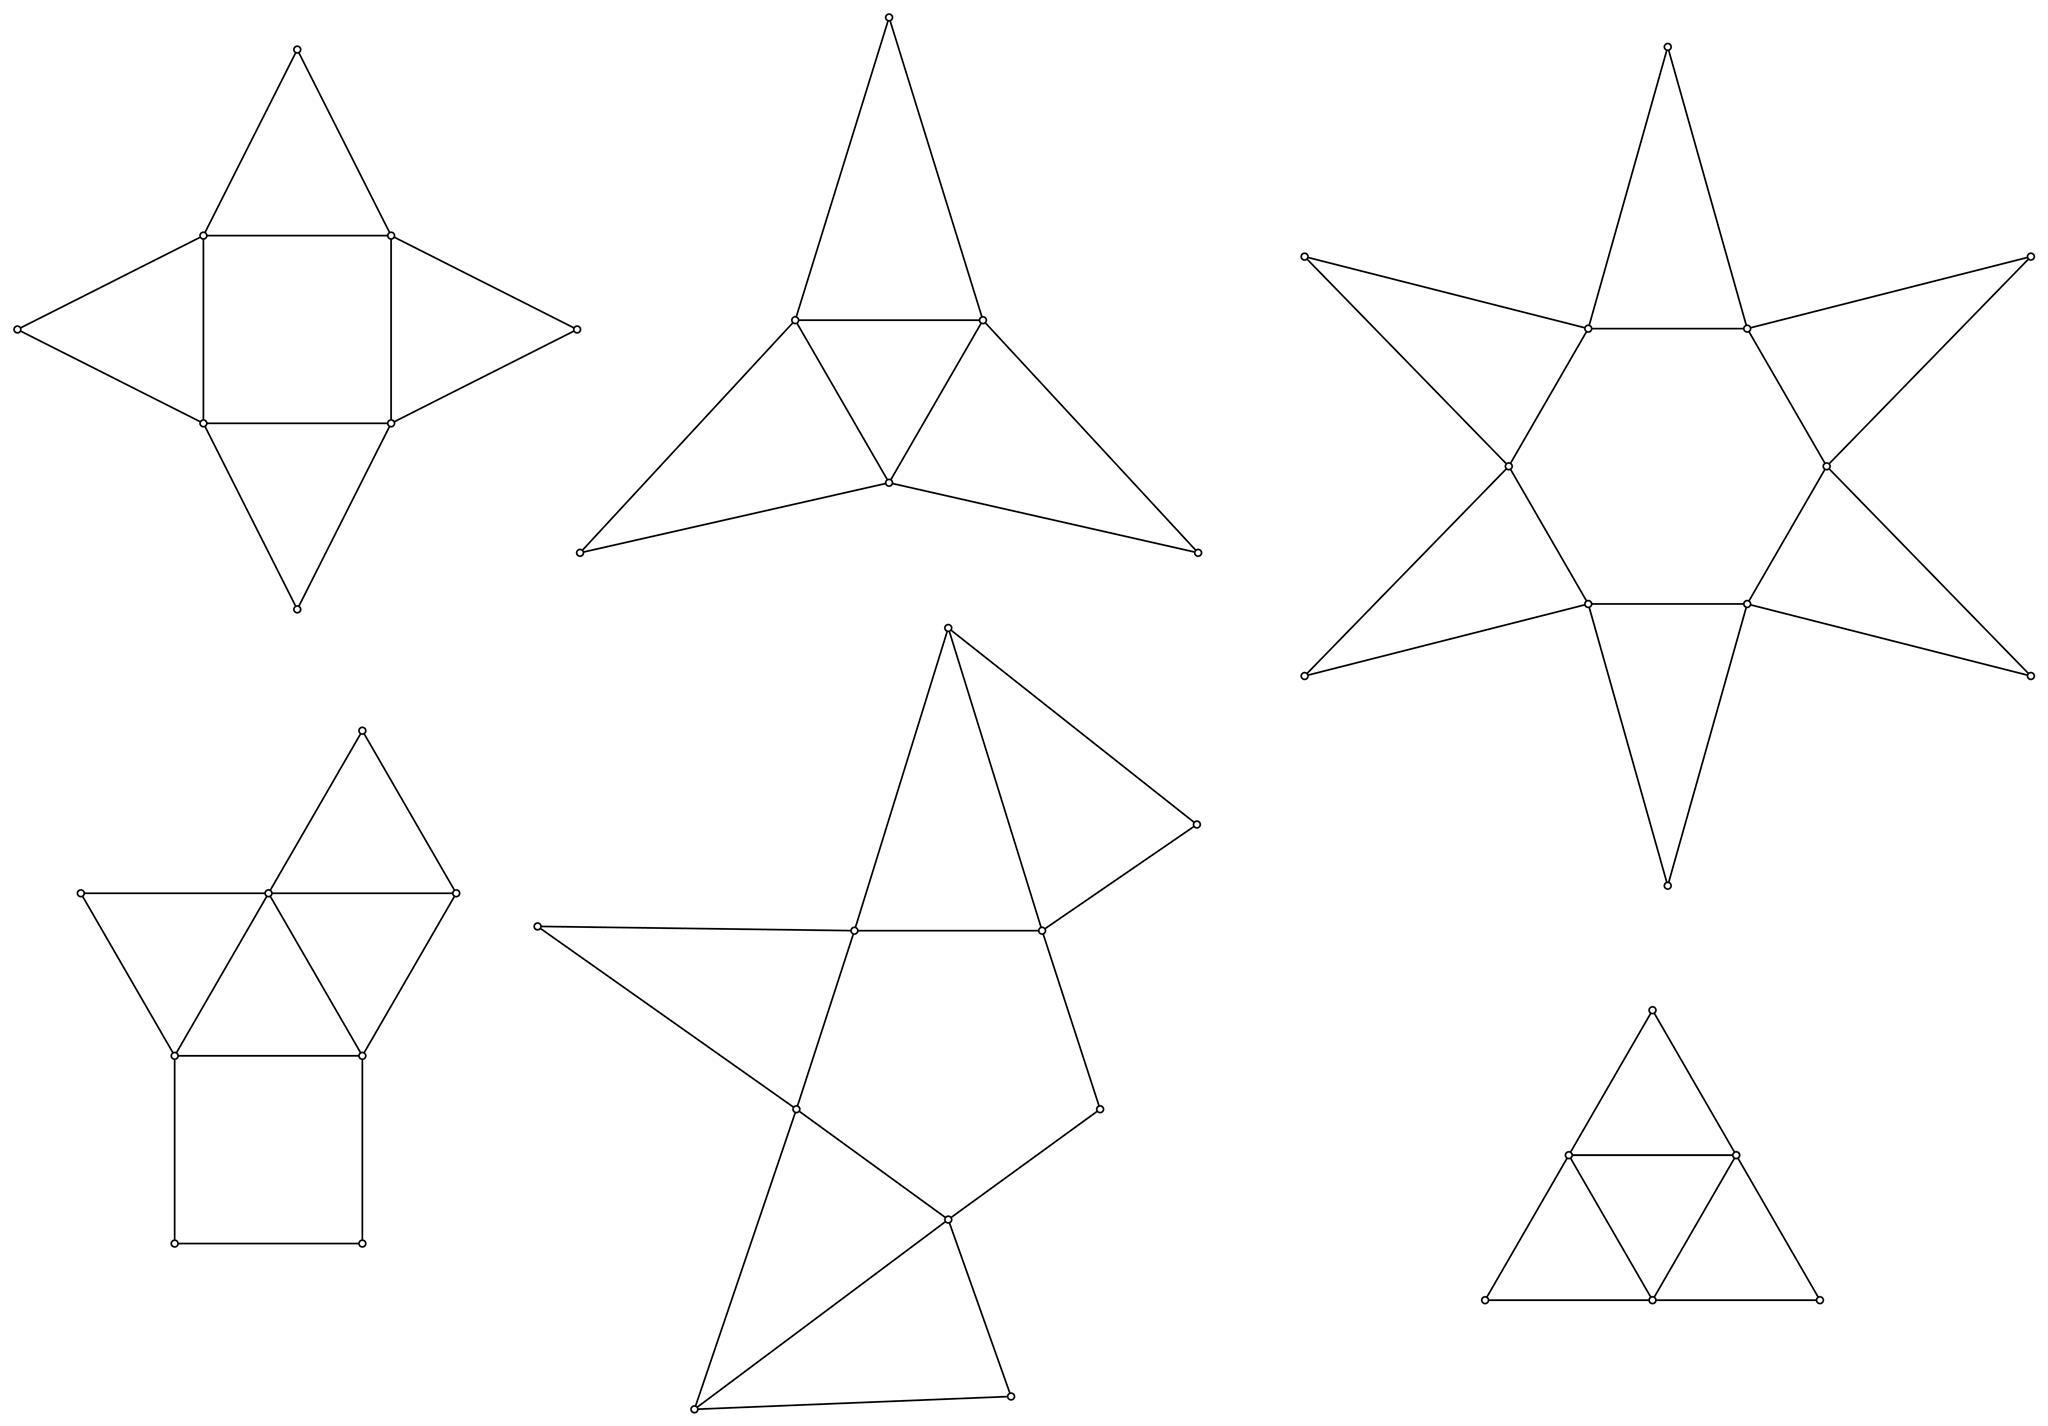 Slika prikazuje razne mreže raznih pravilnih piramida.